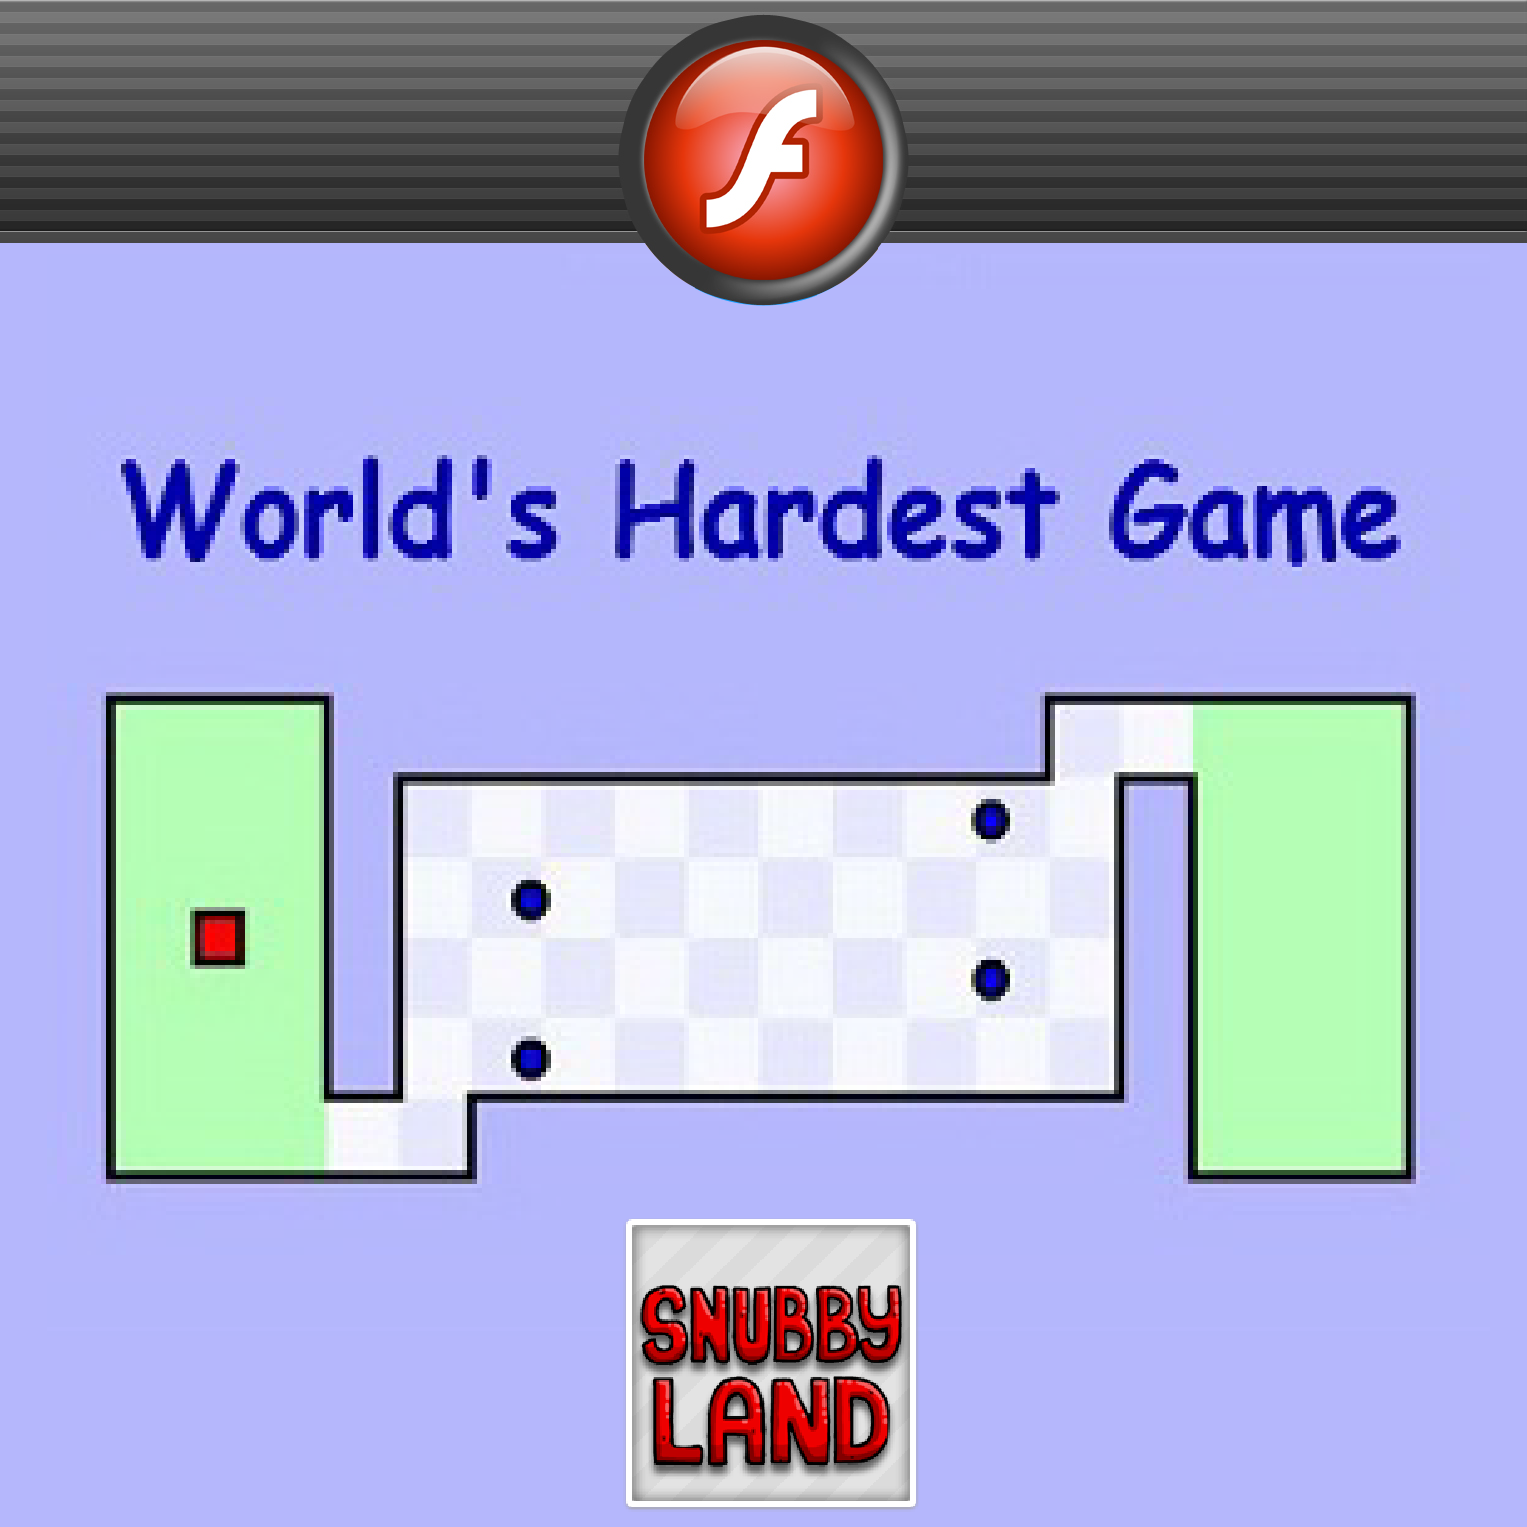 Worlds Hardest Game 2 Images - LaunchBox Games Database